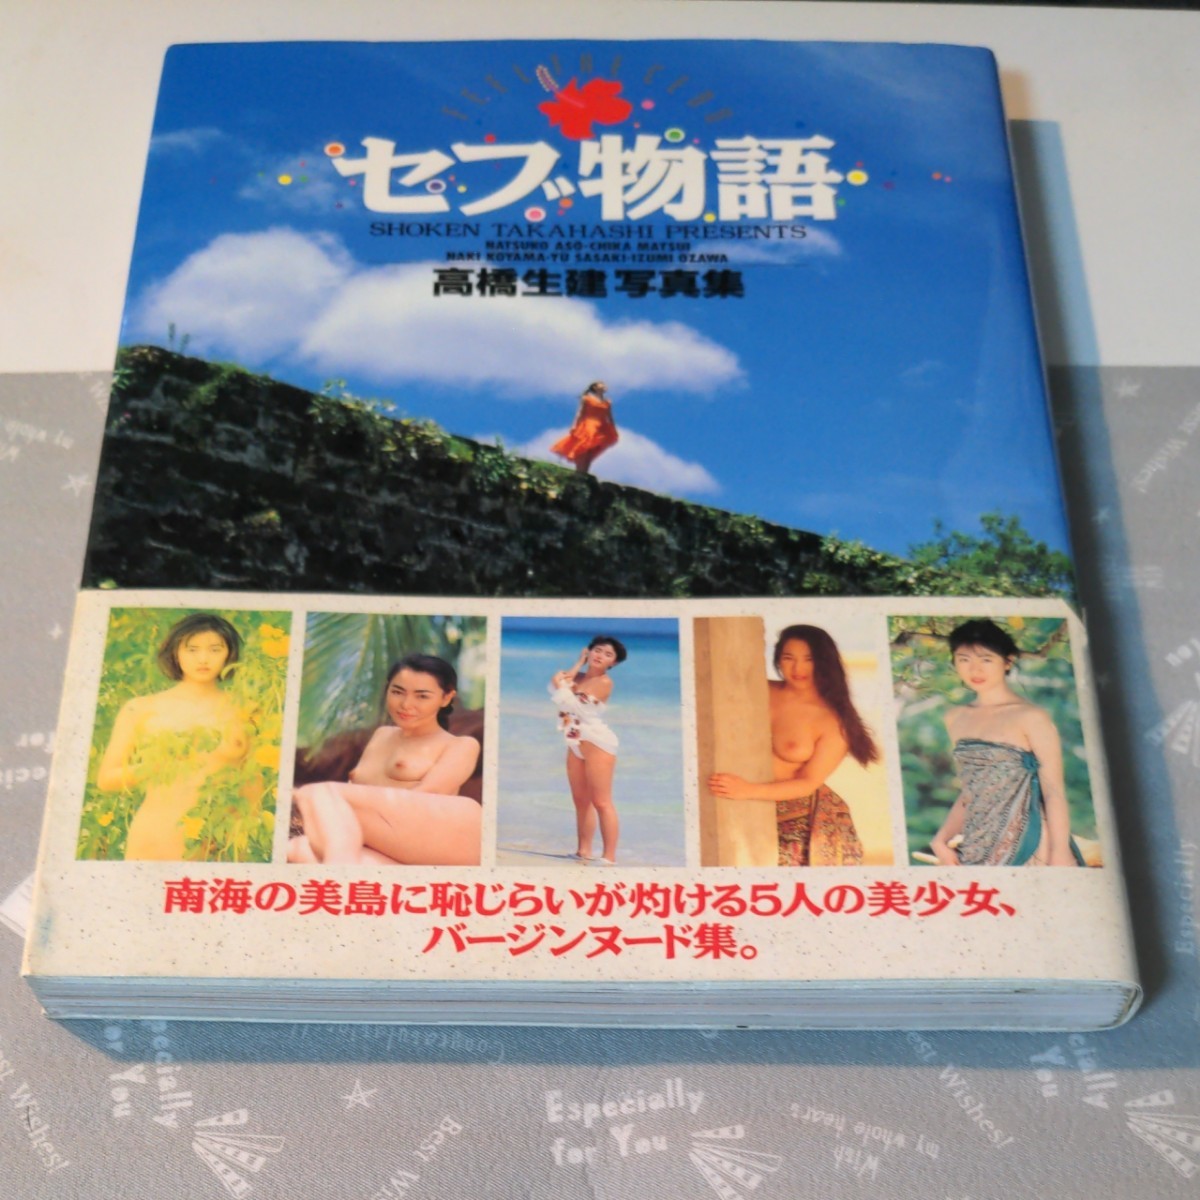 【写真集】高橋生健 「セブ島物語」※南海の美島に恥じらいが灼ける5人の美少女、バージンヌード集。